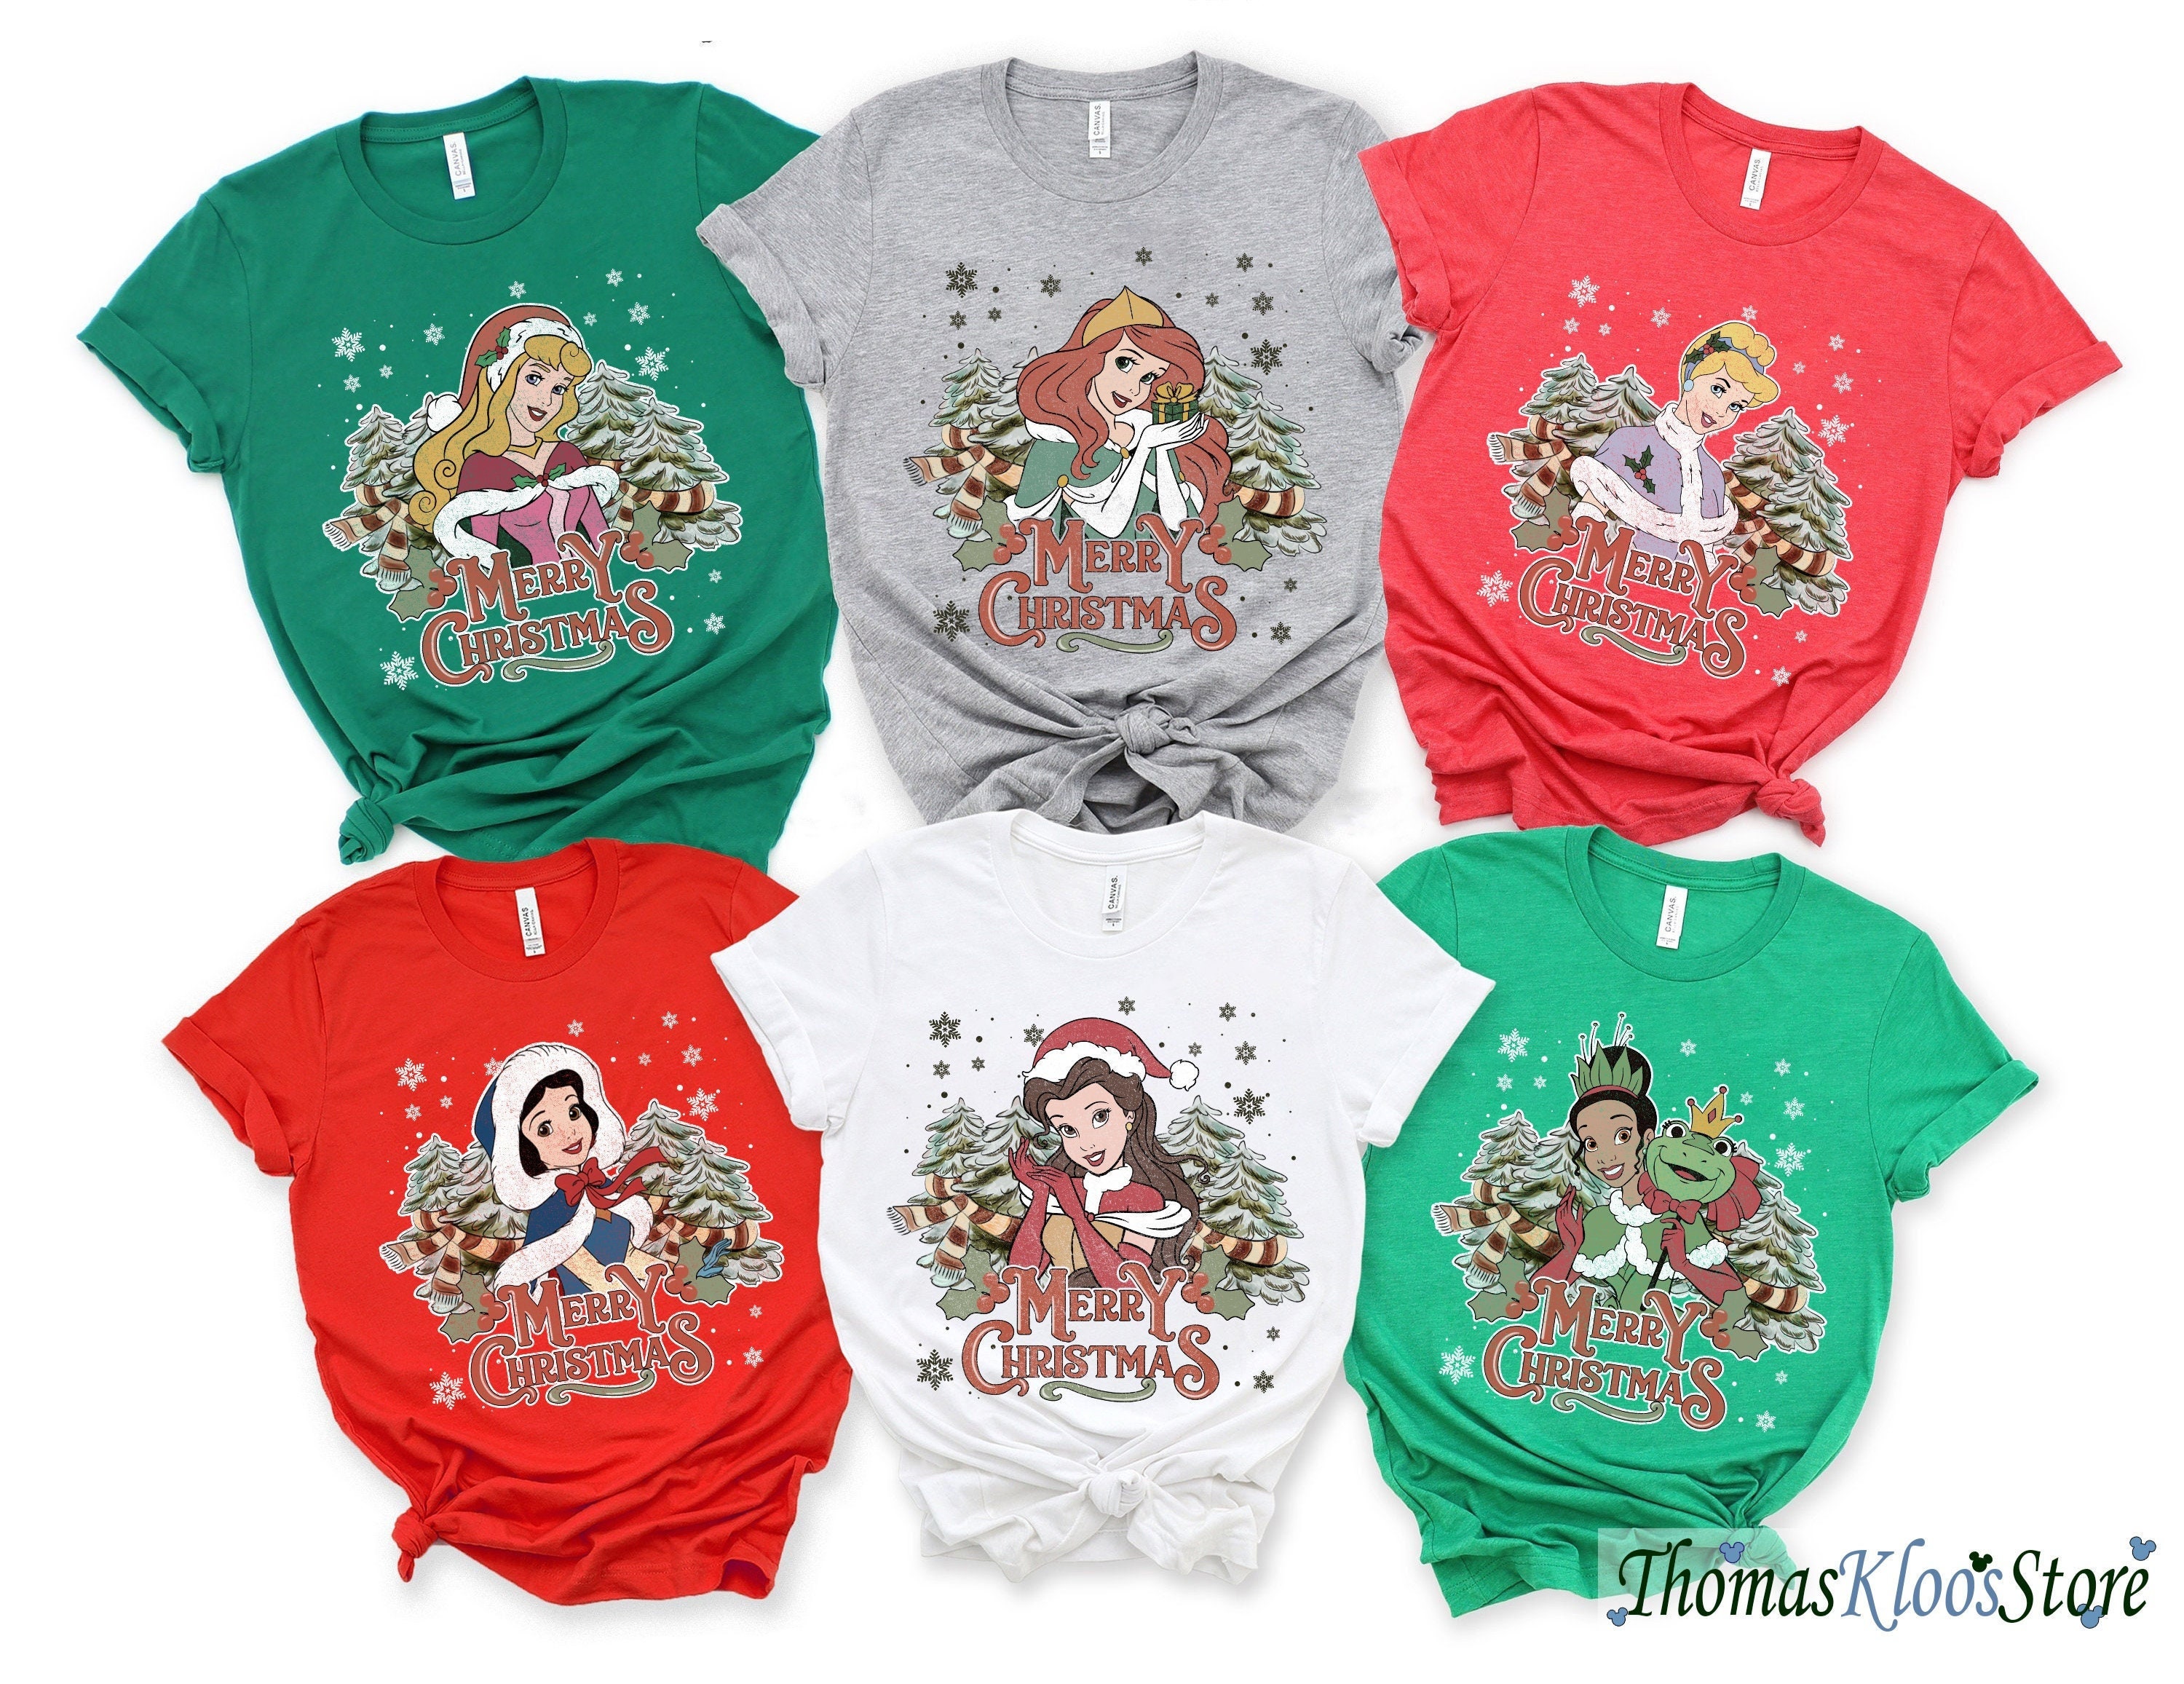 Discover Retro Princess Christmas Disney Shirt